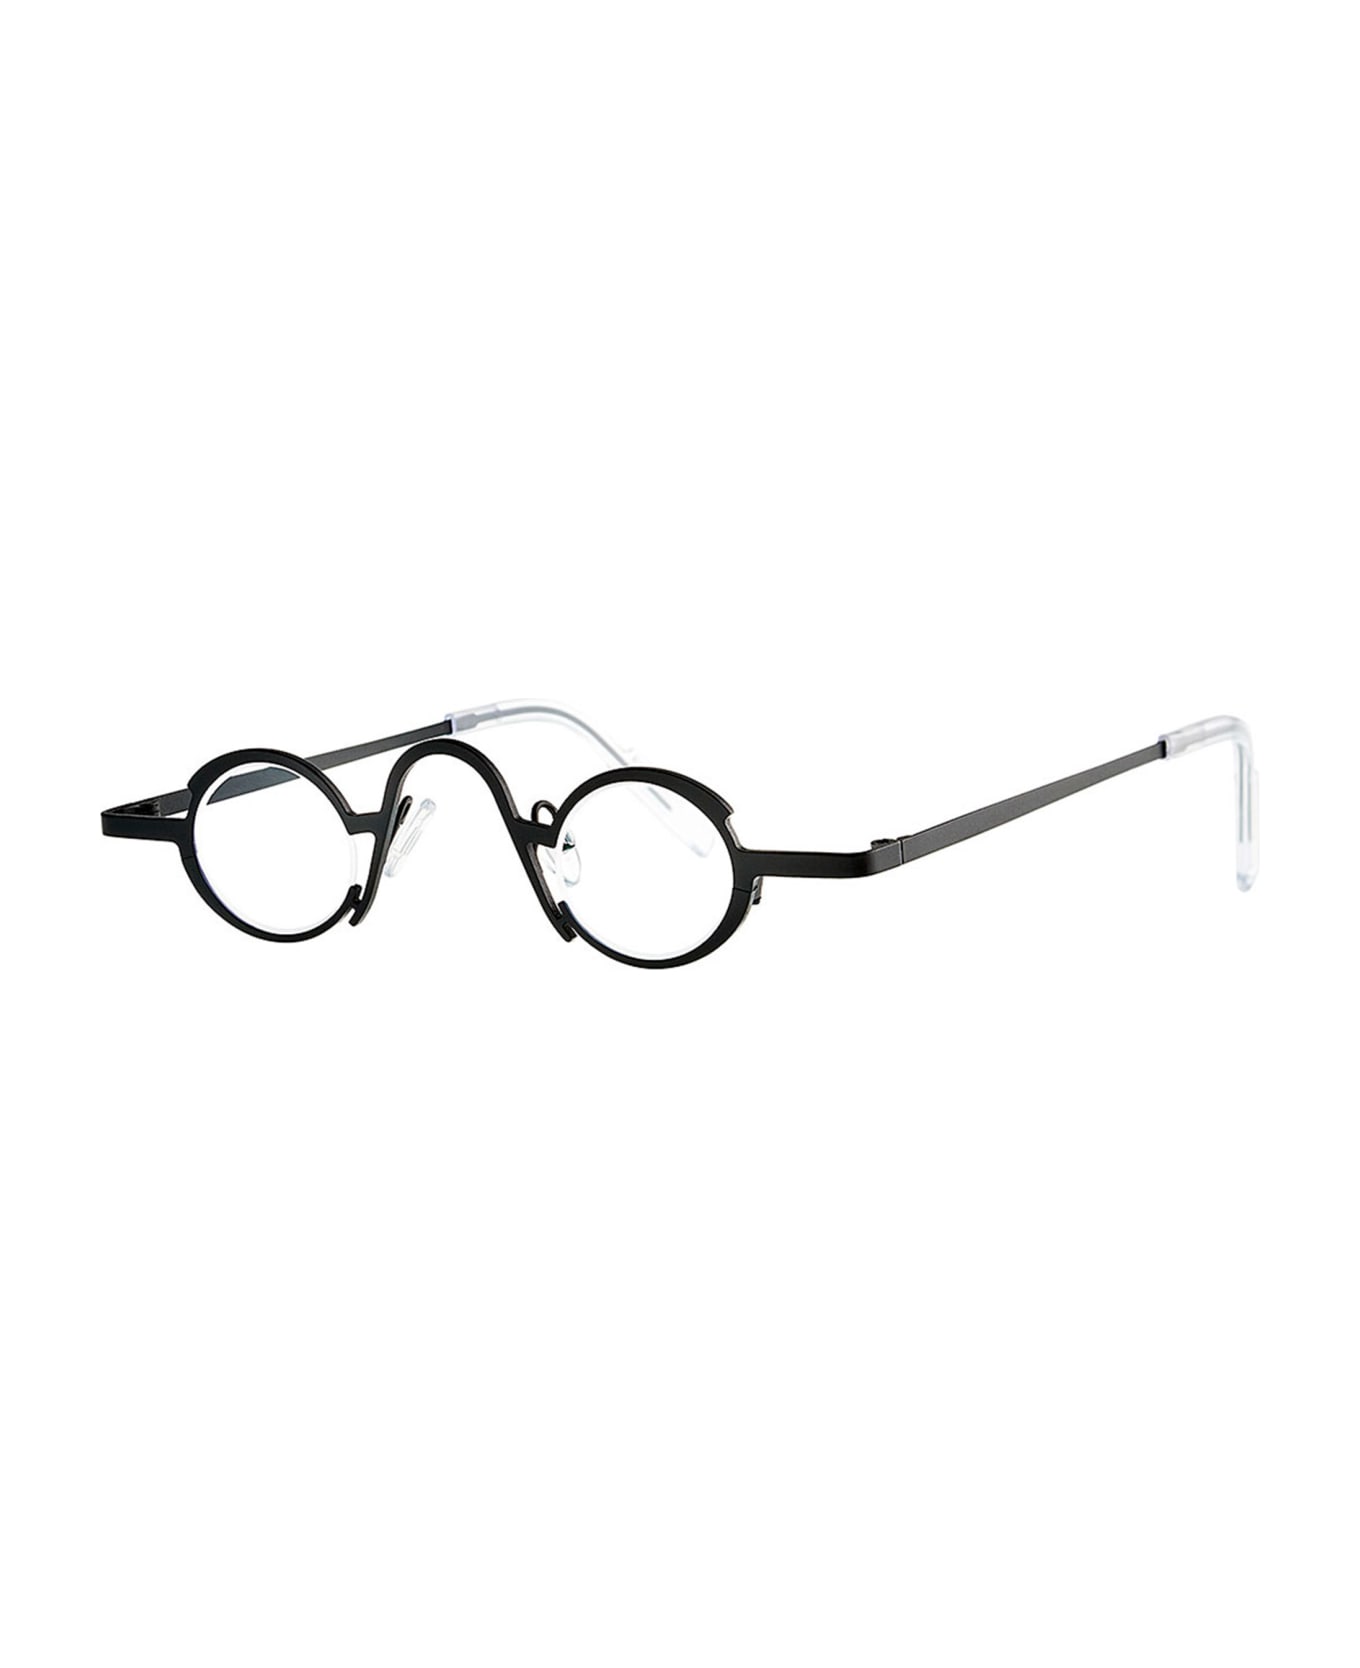 Theo Eyewear Vibration - Black Matte Rx Glasses - black matte